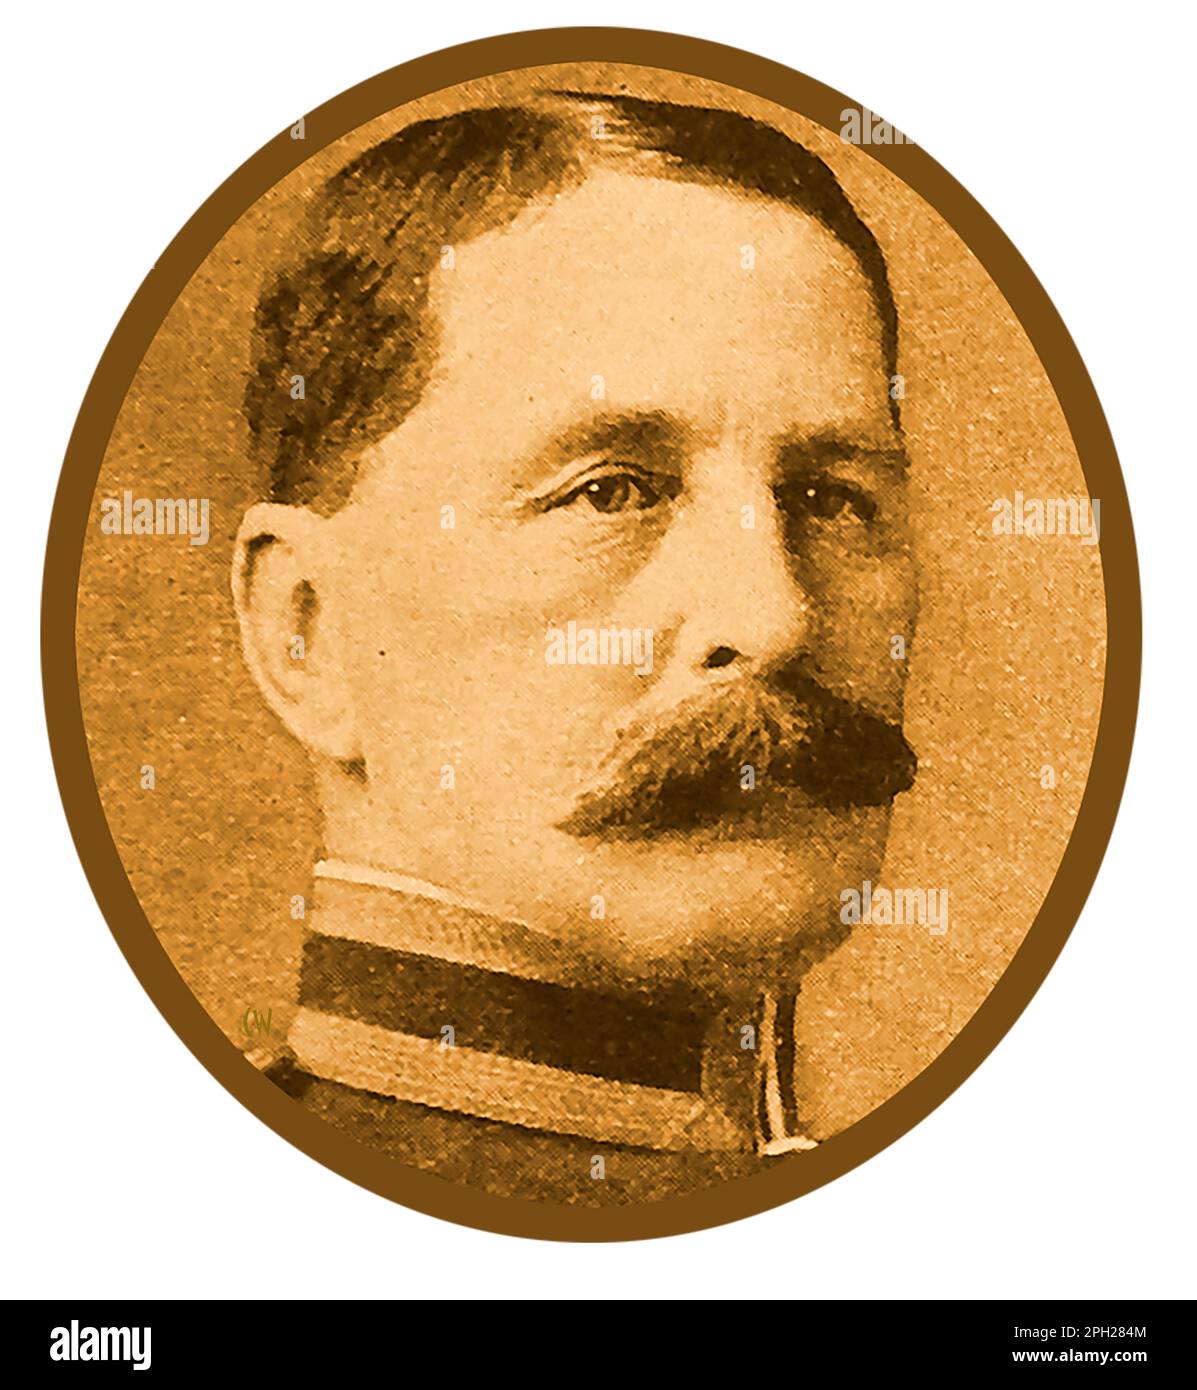 Un portrait de la première Guerre mondiale du général de division britannique Sir William Henry Birkbeck, directeur britannique des montages. Banque D'Images